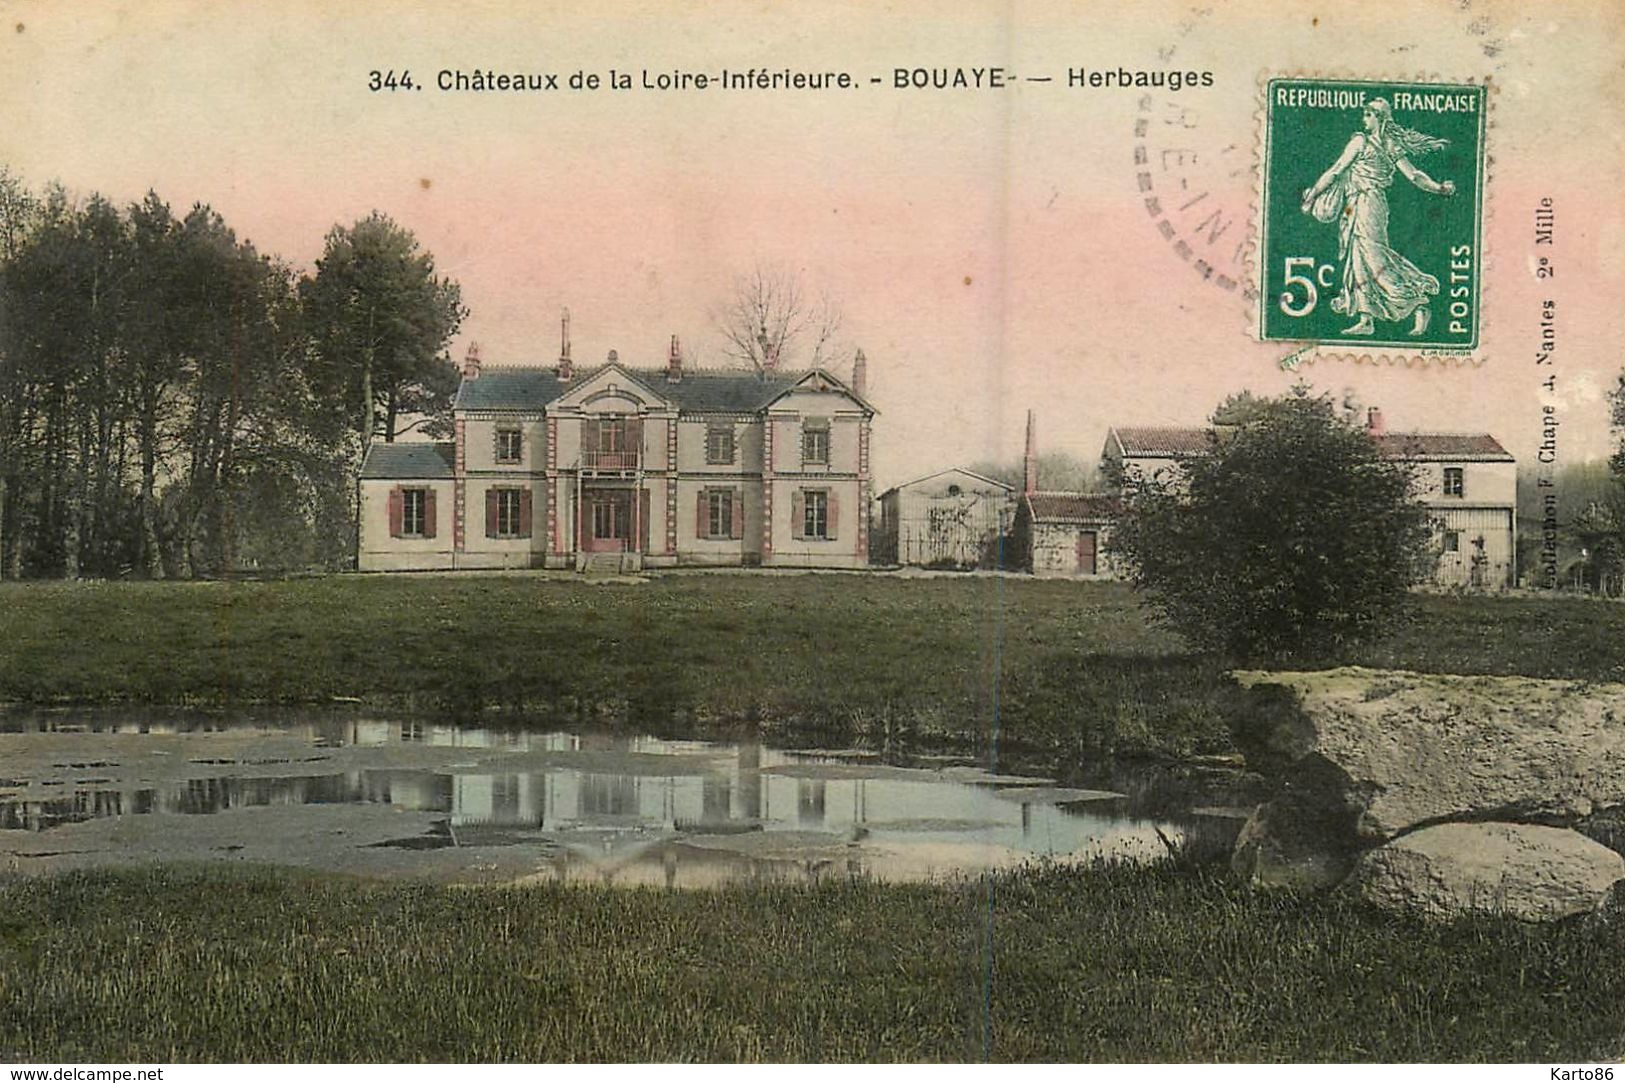 Bouaye * Herbauges * Chateaux De La Loire Inférieure N°344 - Bouaye